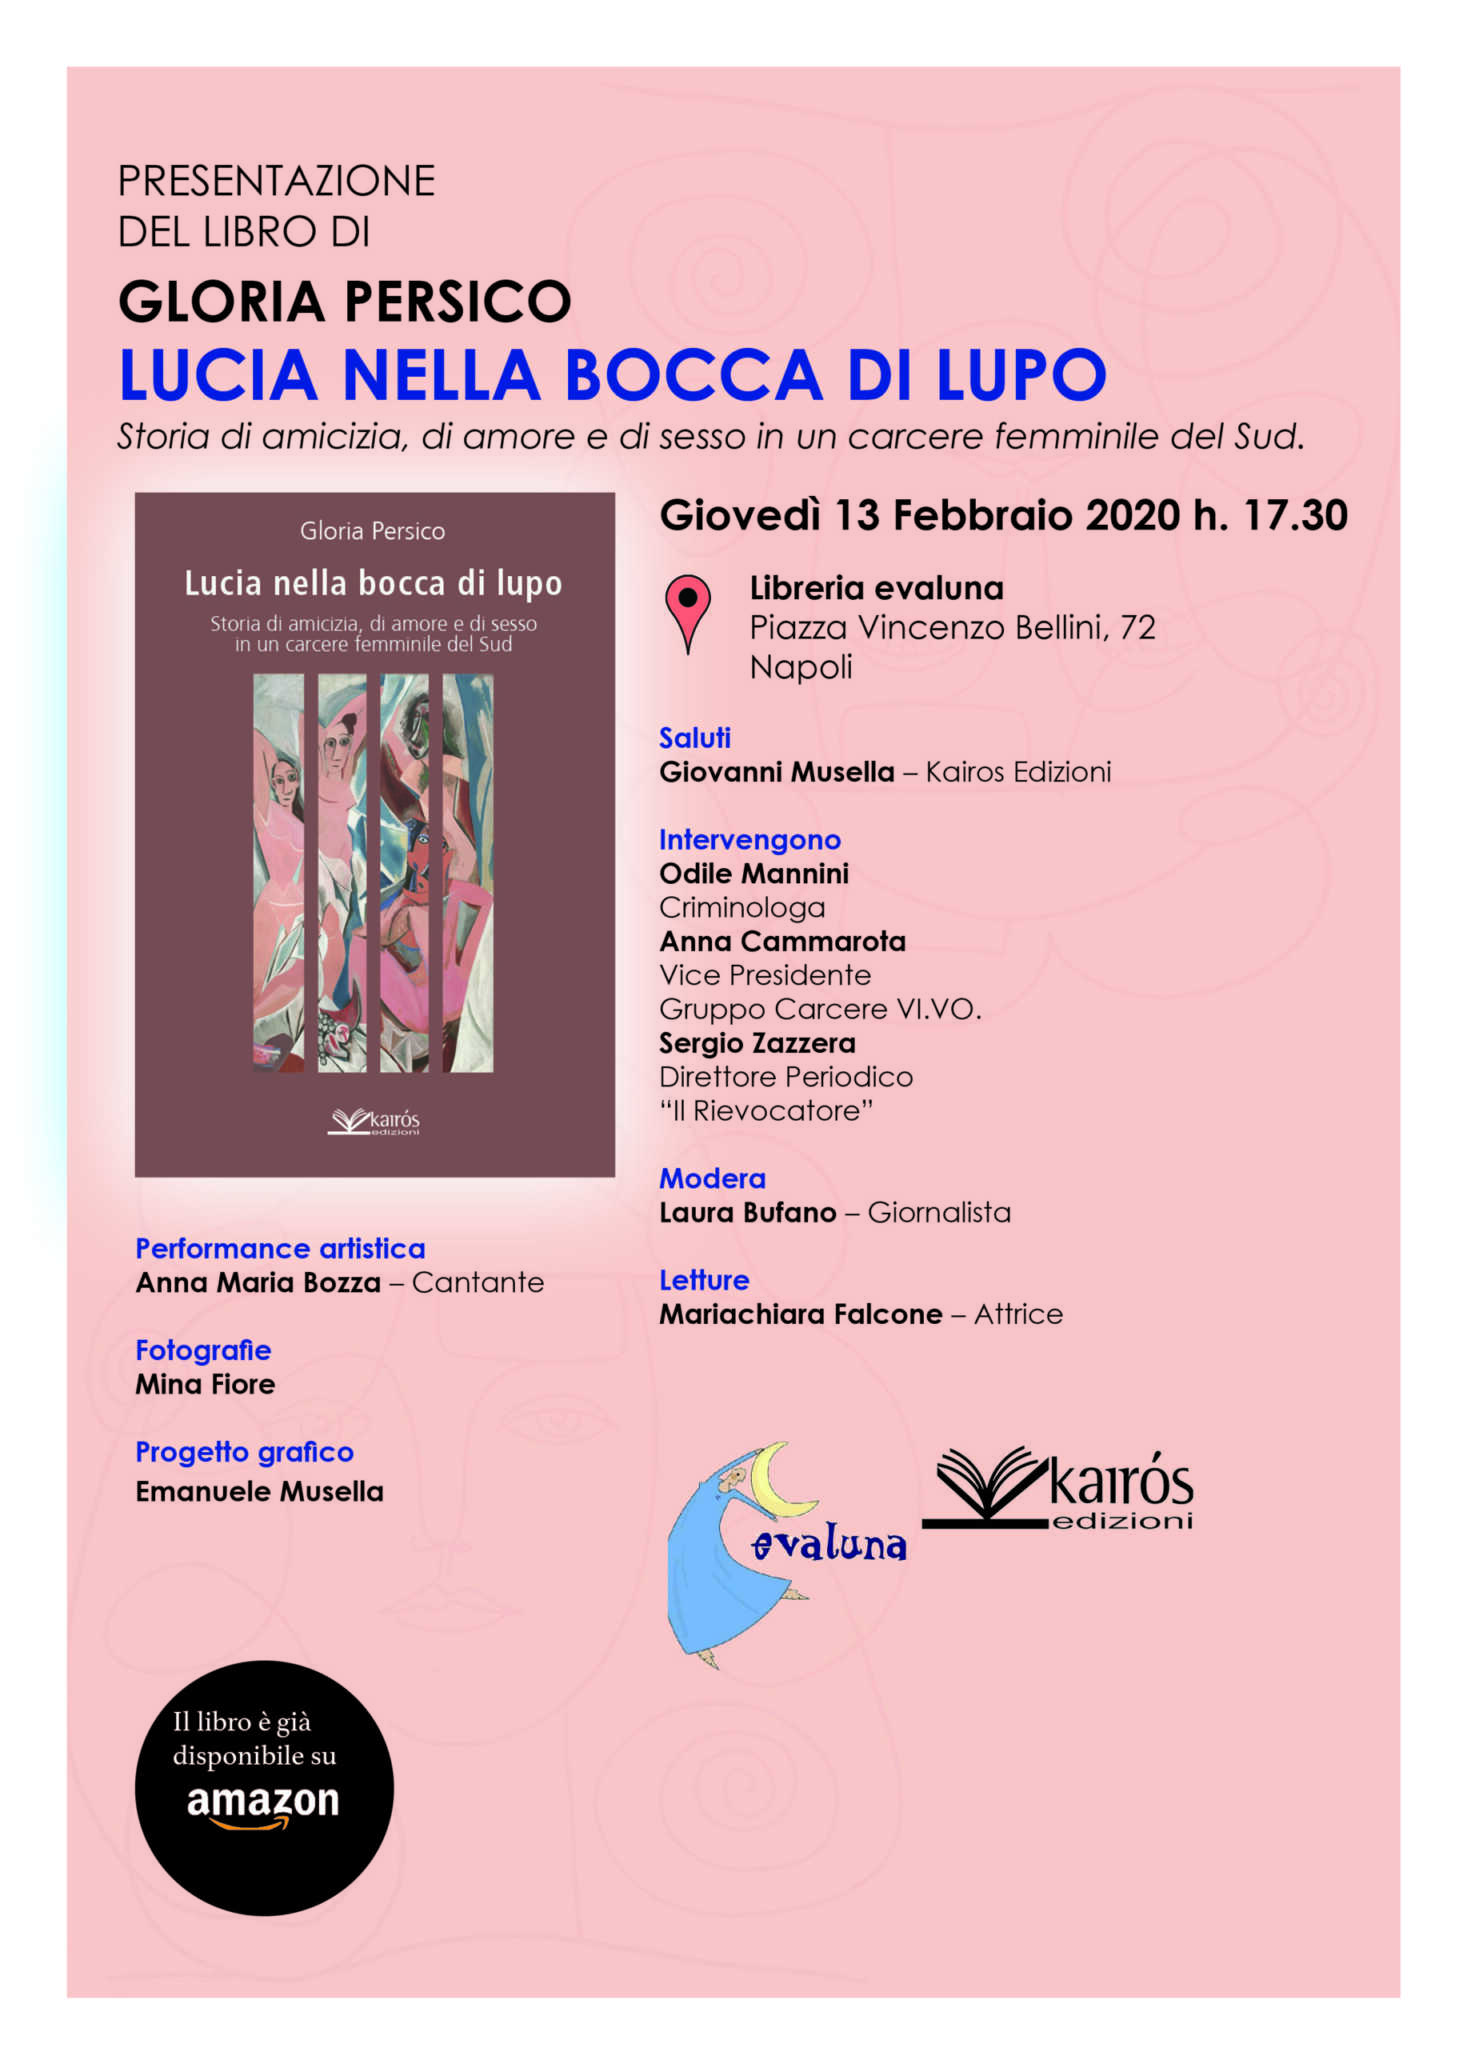 Presentazione del libro di Gloria Persico “Lucia nella bocca di lupo”, storia di amicizia, di amore e di sesso in un carcere femminile del Sud